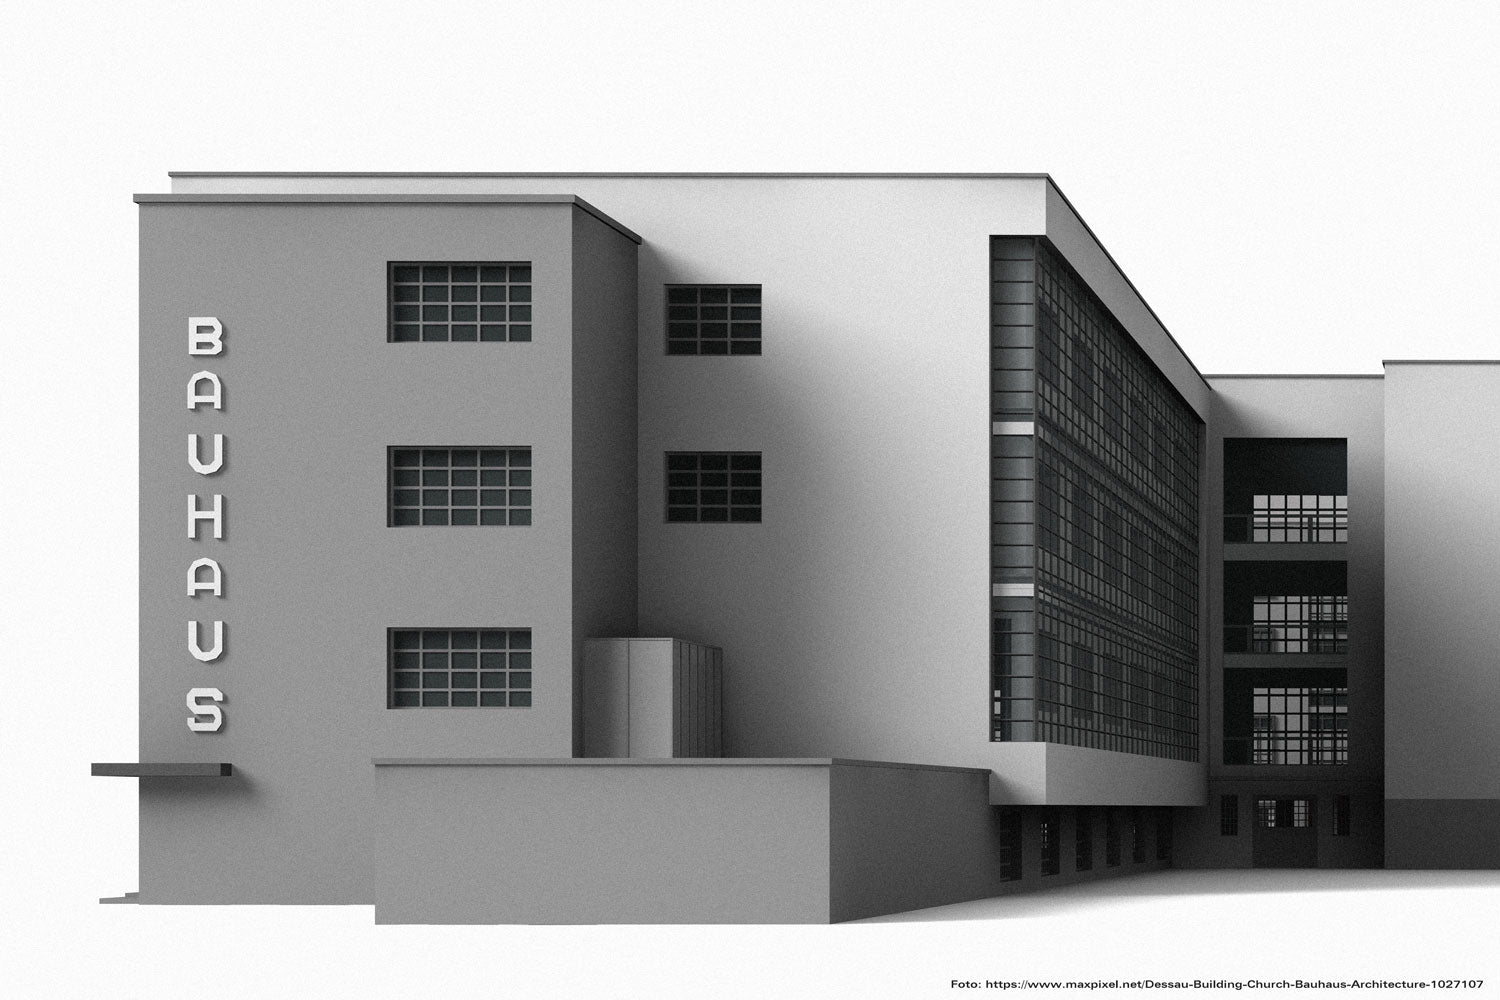 How Walter Gropius designed the Bauhaus School in Dessau